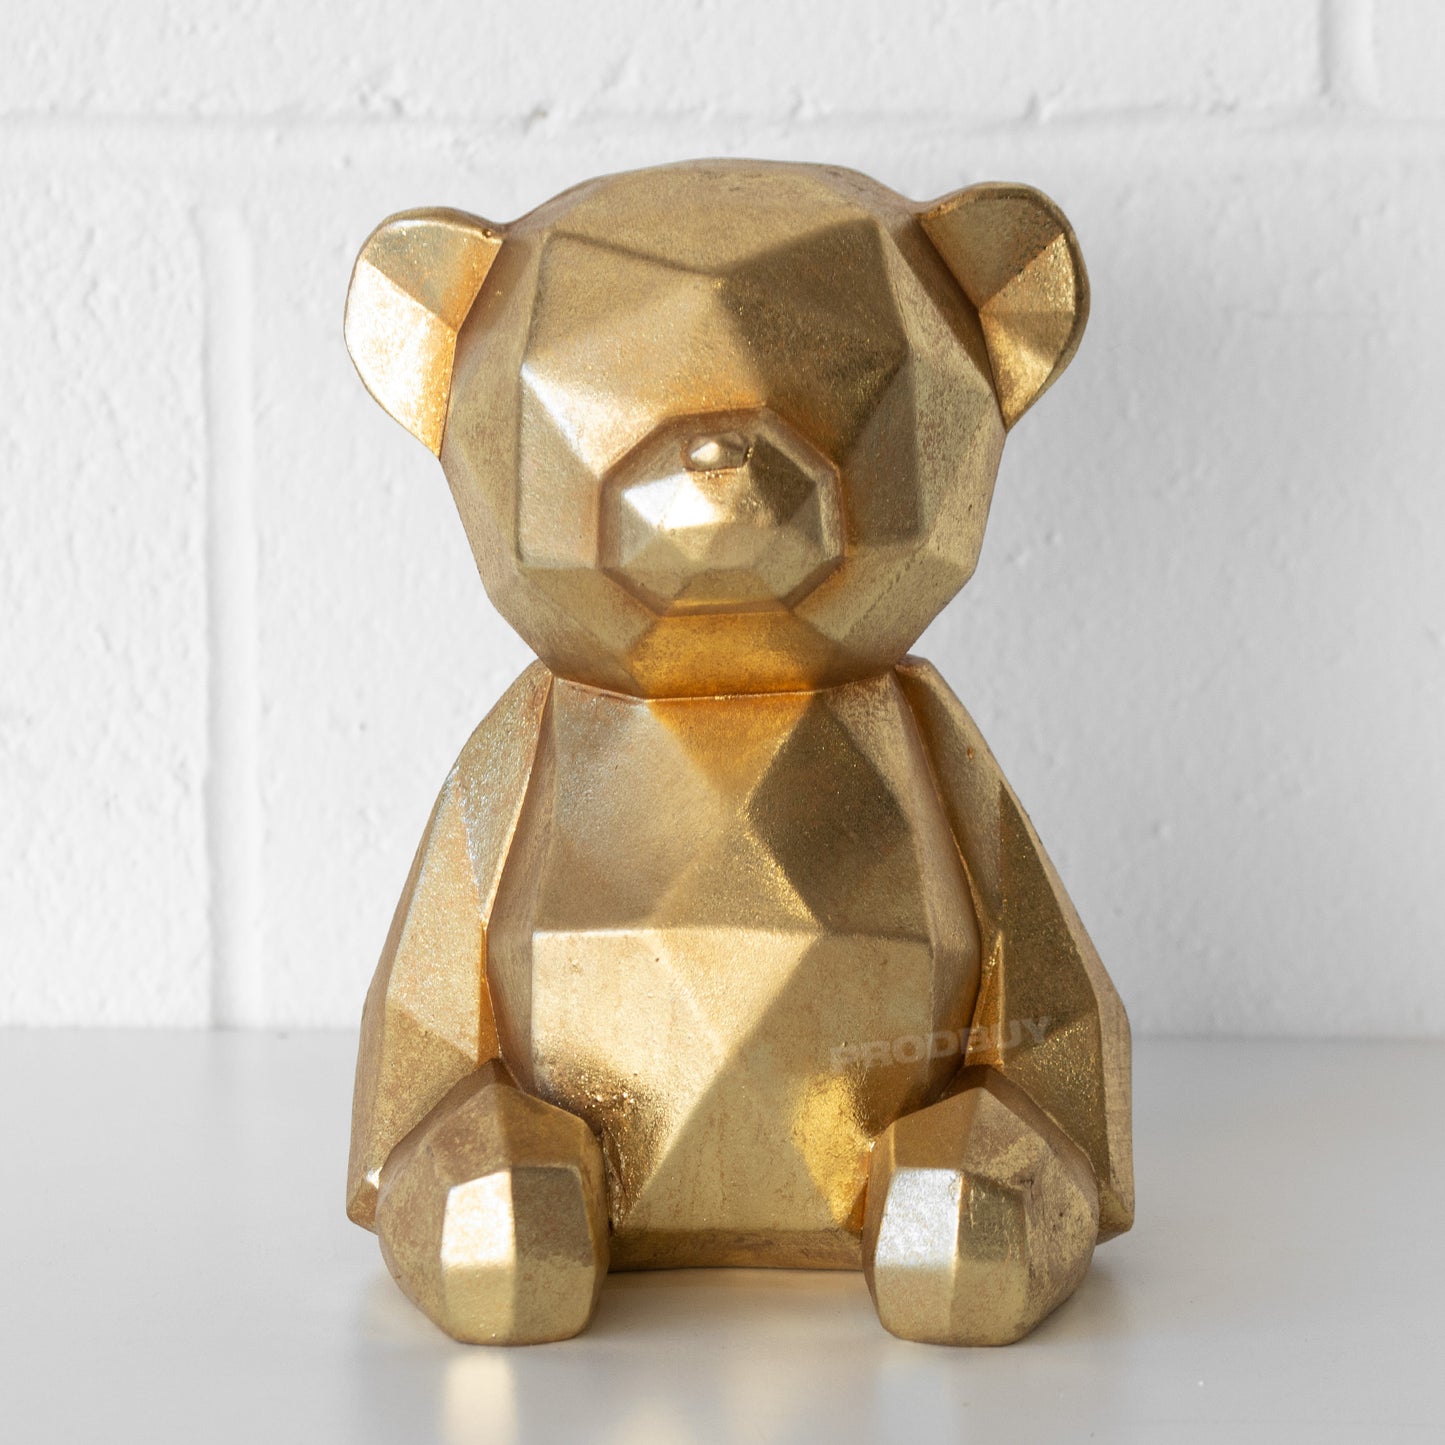 Gold Colour Teddy Bear Ornament 19cm